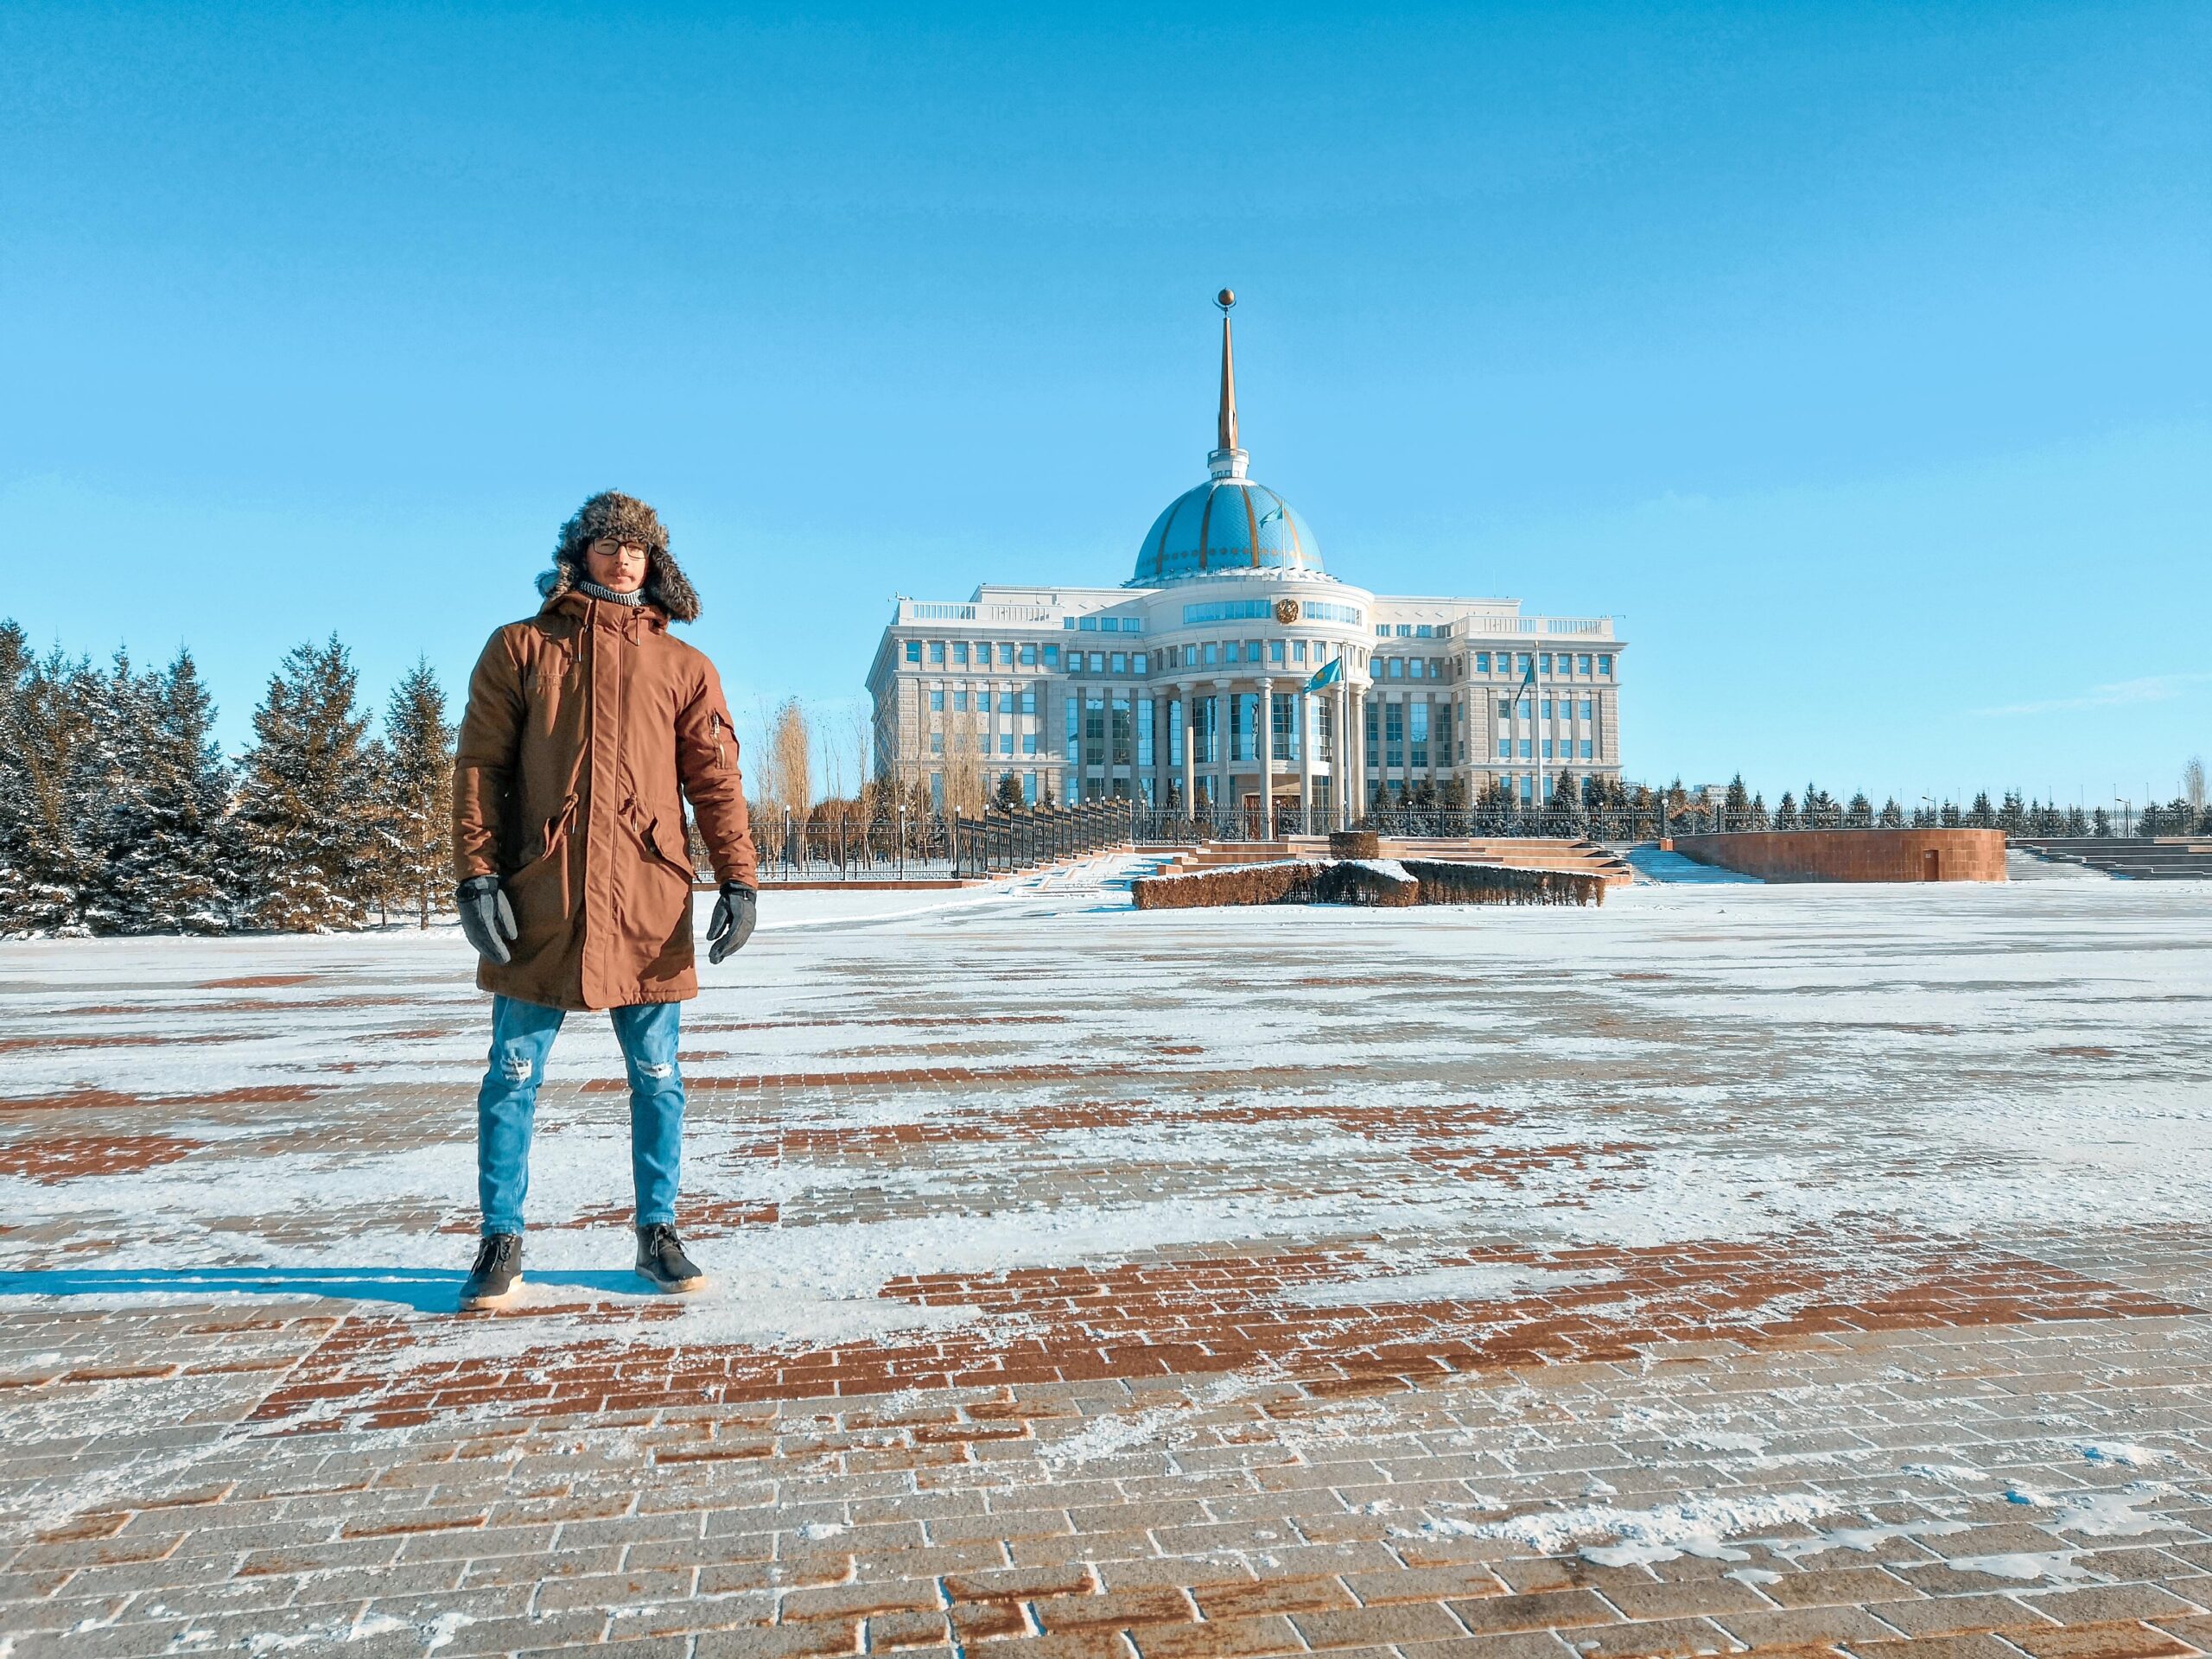 Nursultan, Kazakhstan